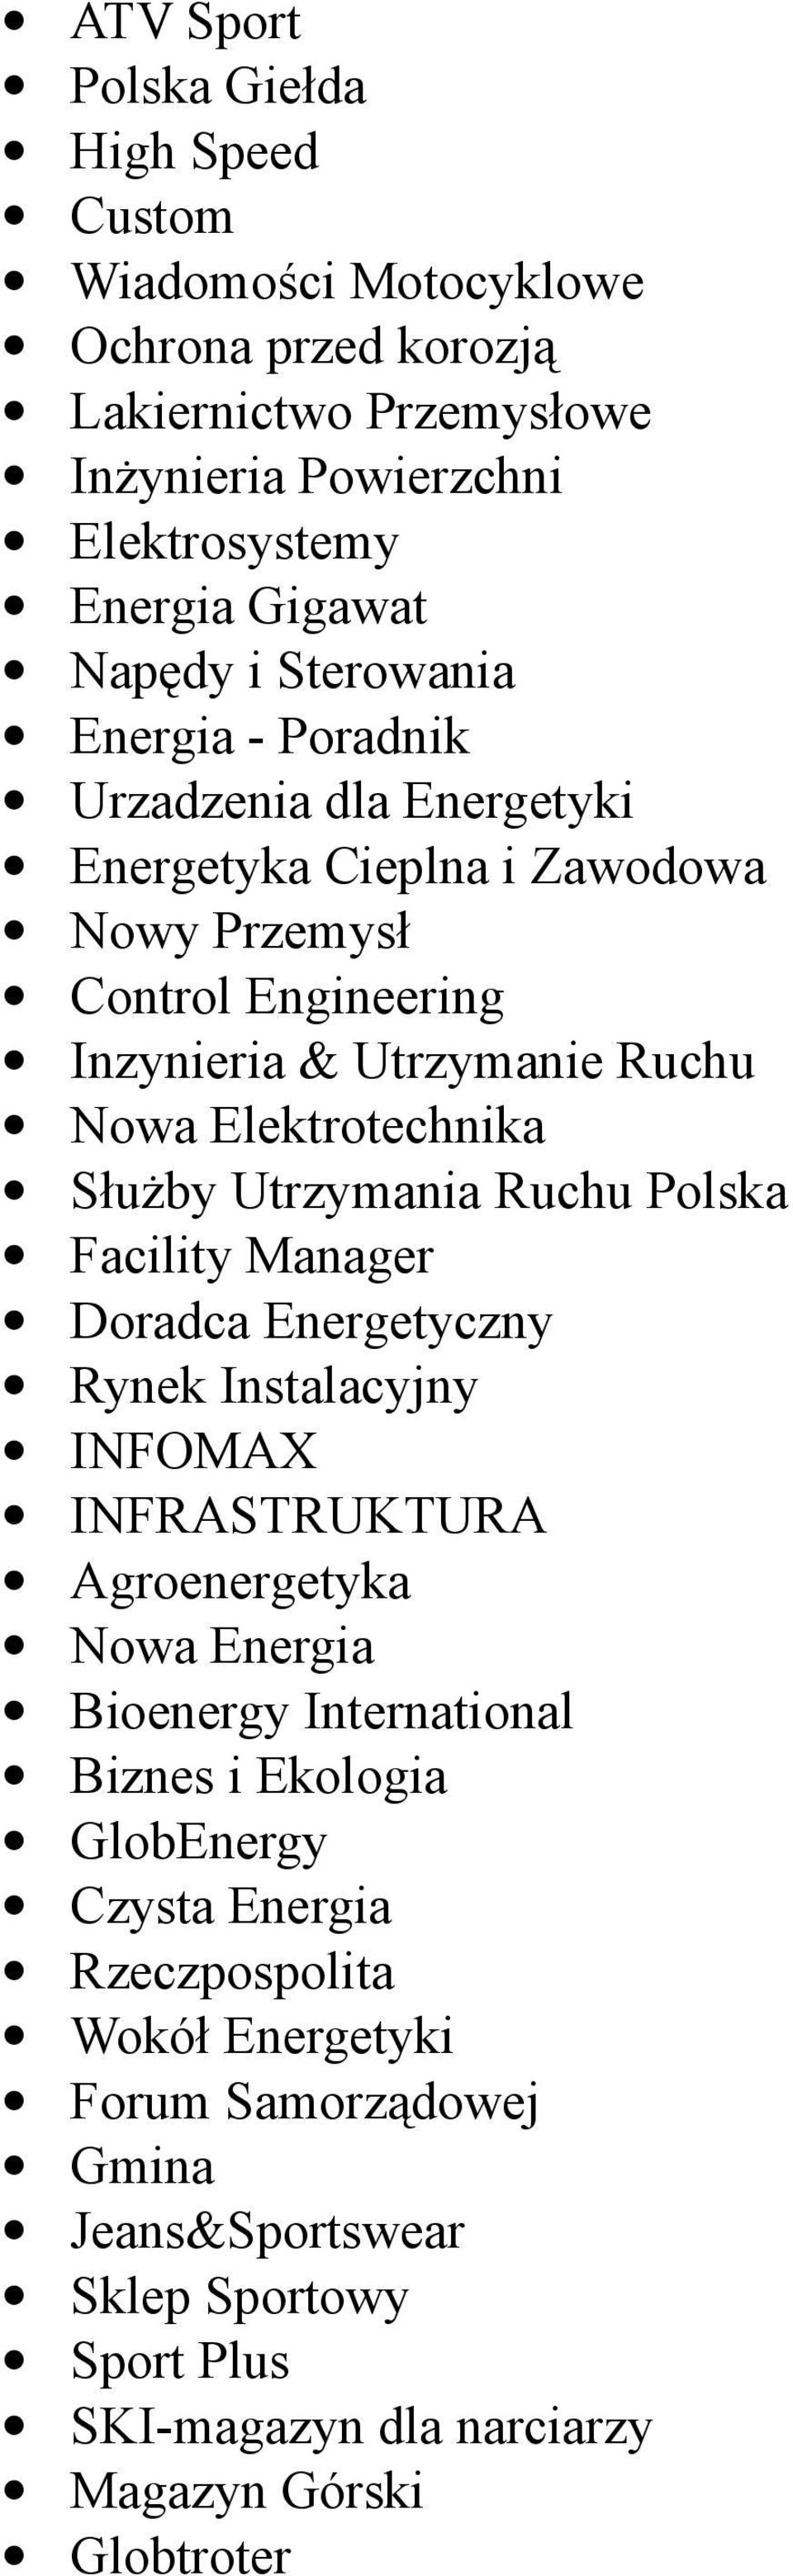 Służby Utrzymania Ruchu Polska Facility Manager Doradca Energetyczny Rynek Instalacyjny INFOMAX INFRASTRUKTURA Agroenergetyka Nowa Energia Bioenergy International Biznes i